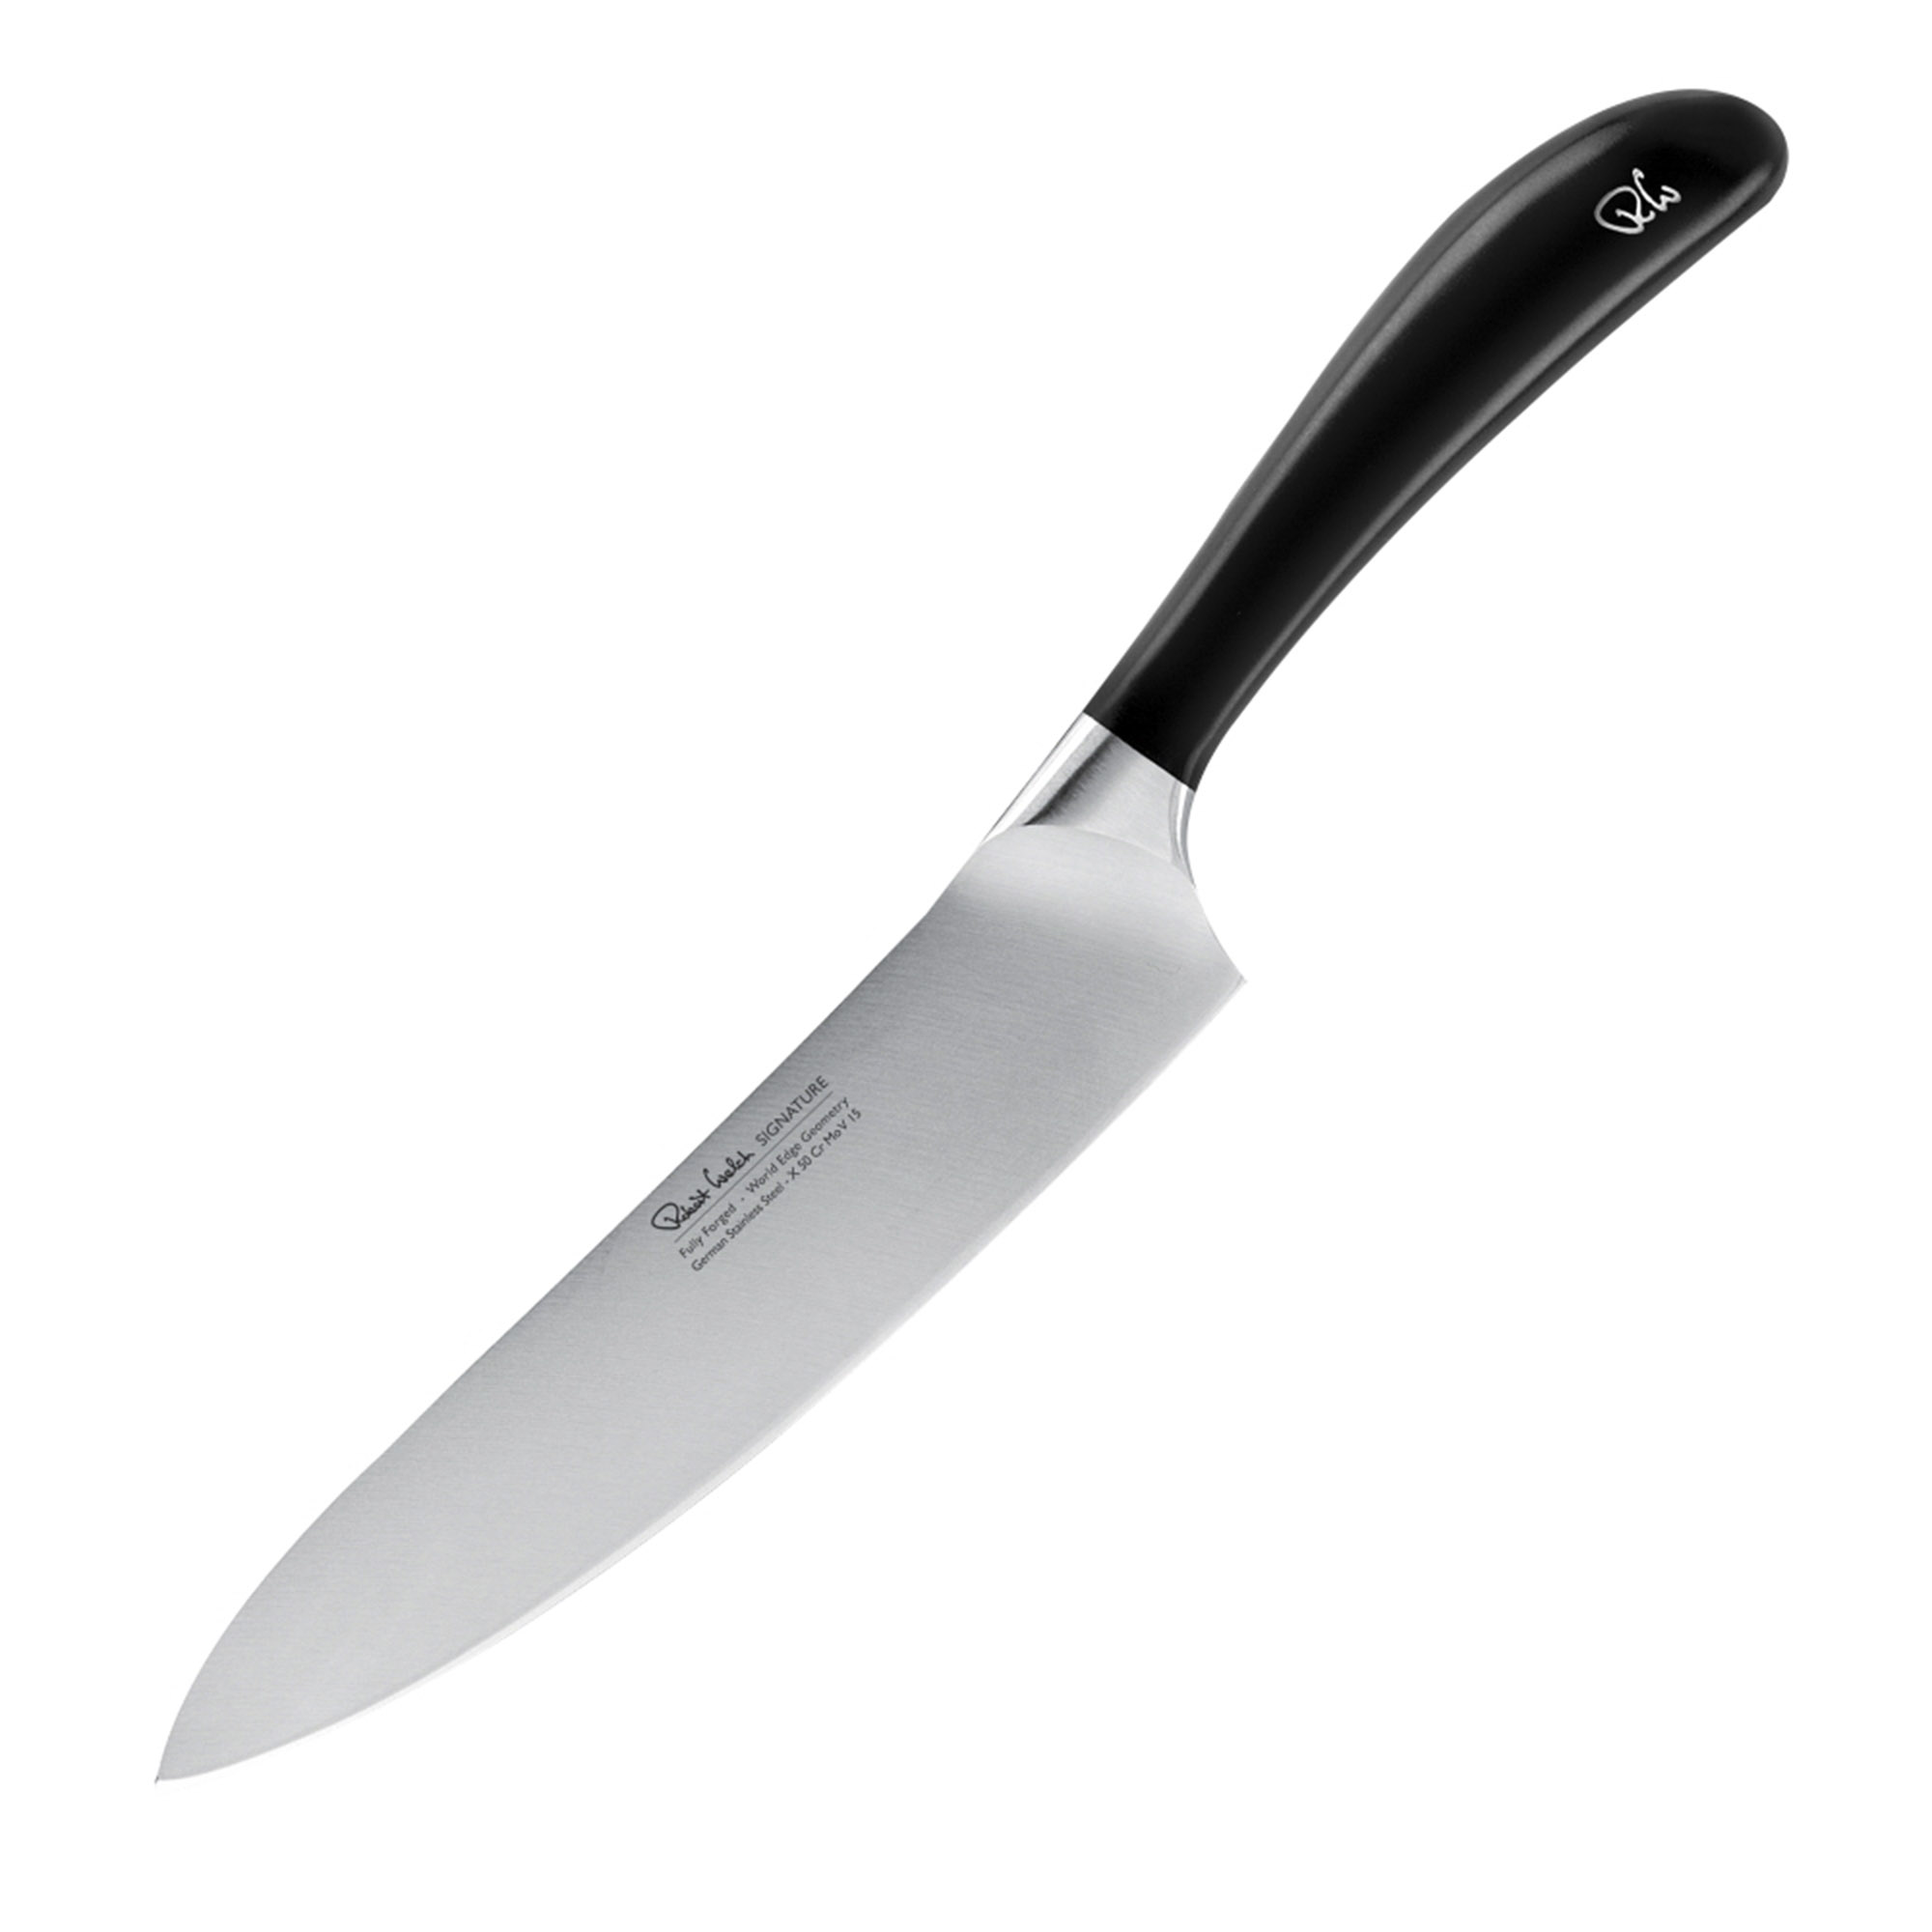 Поварской кухонный шеф-нож Robert Welch Signature 18 см, цвет серебряный - фото 1